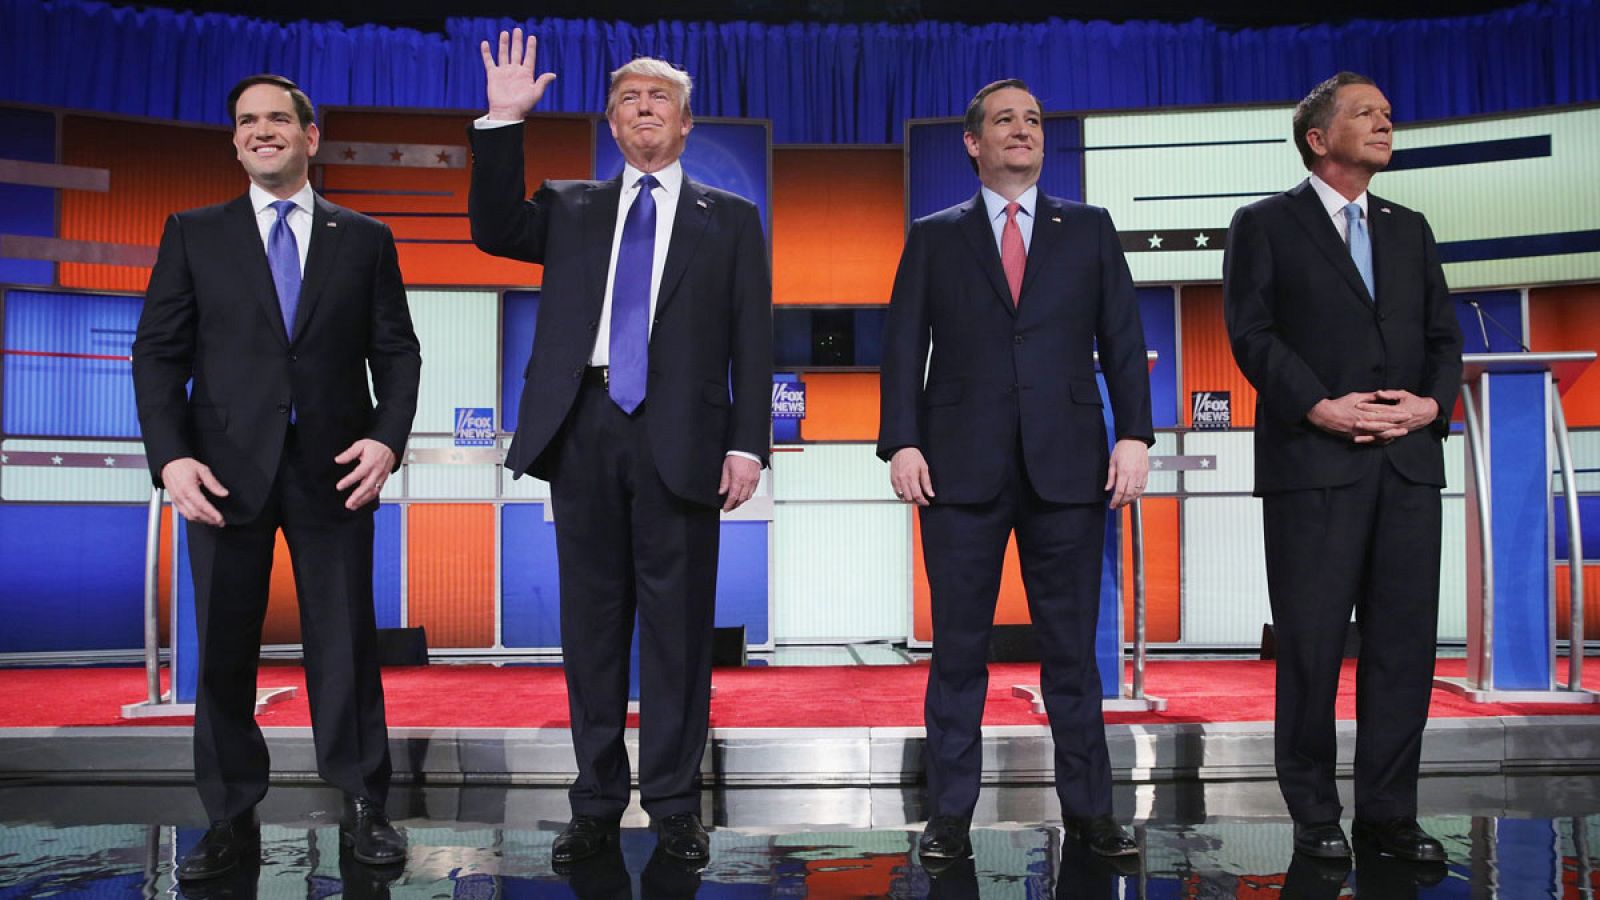 De izquierda a derecha: Marco Rubio, Donald Trump, Ted Cruz y John Kasich en el debate republicano celebrado este jueves, 3 de marzo, en Detroit,